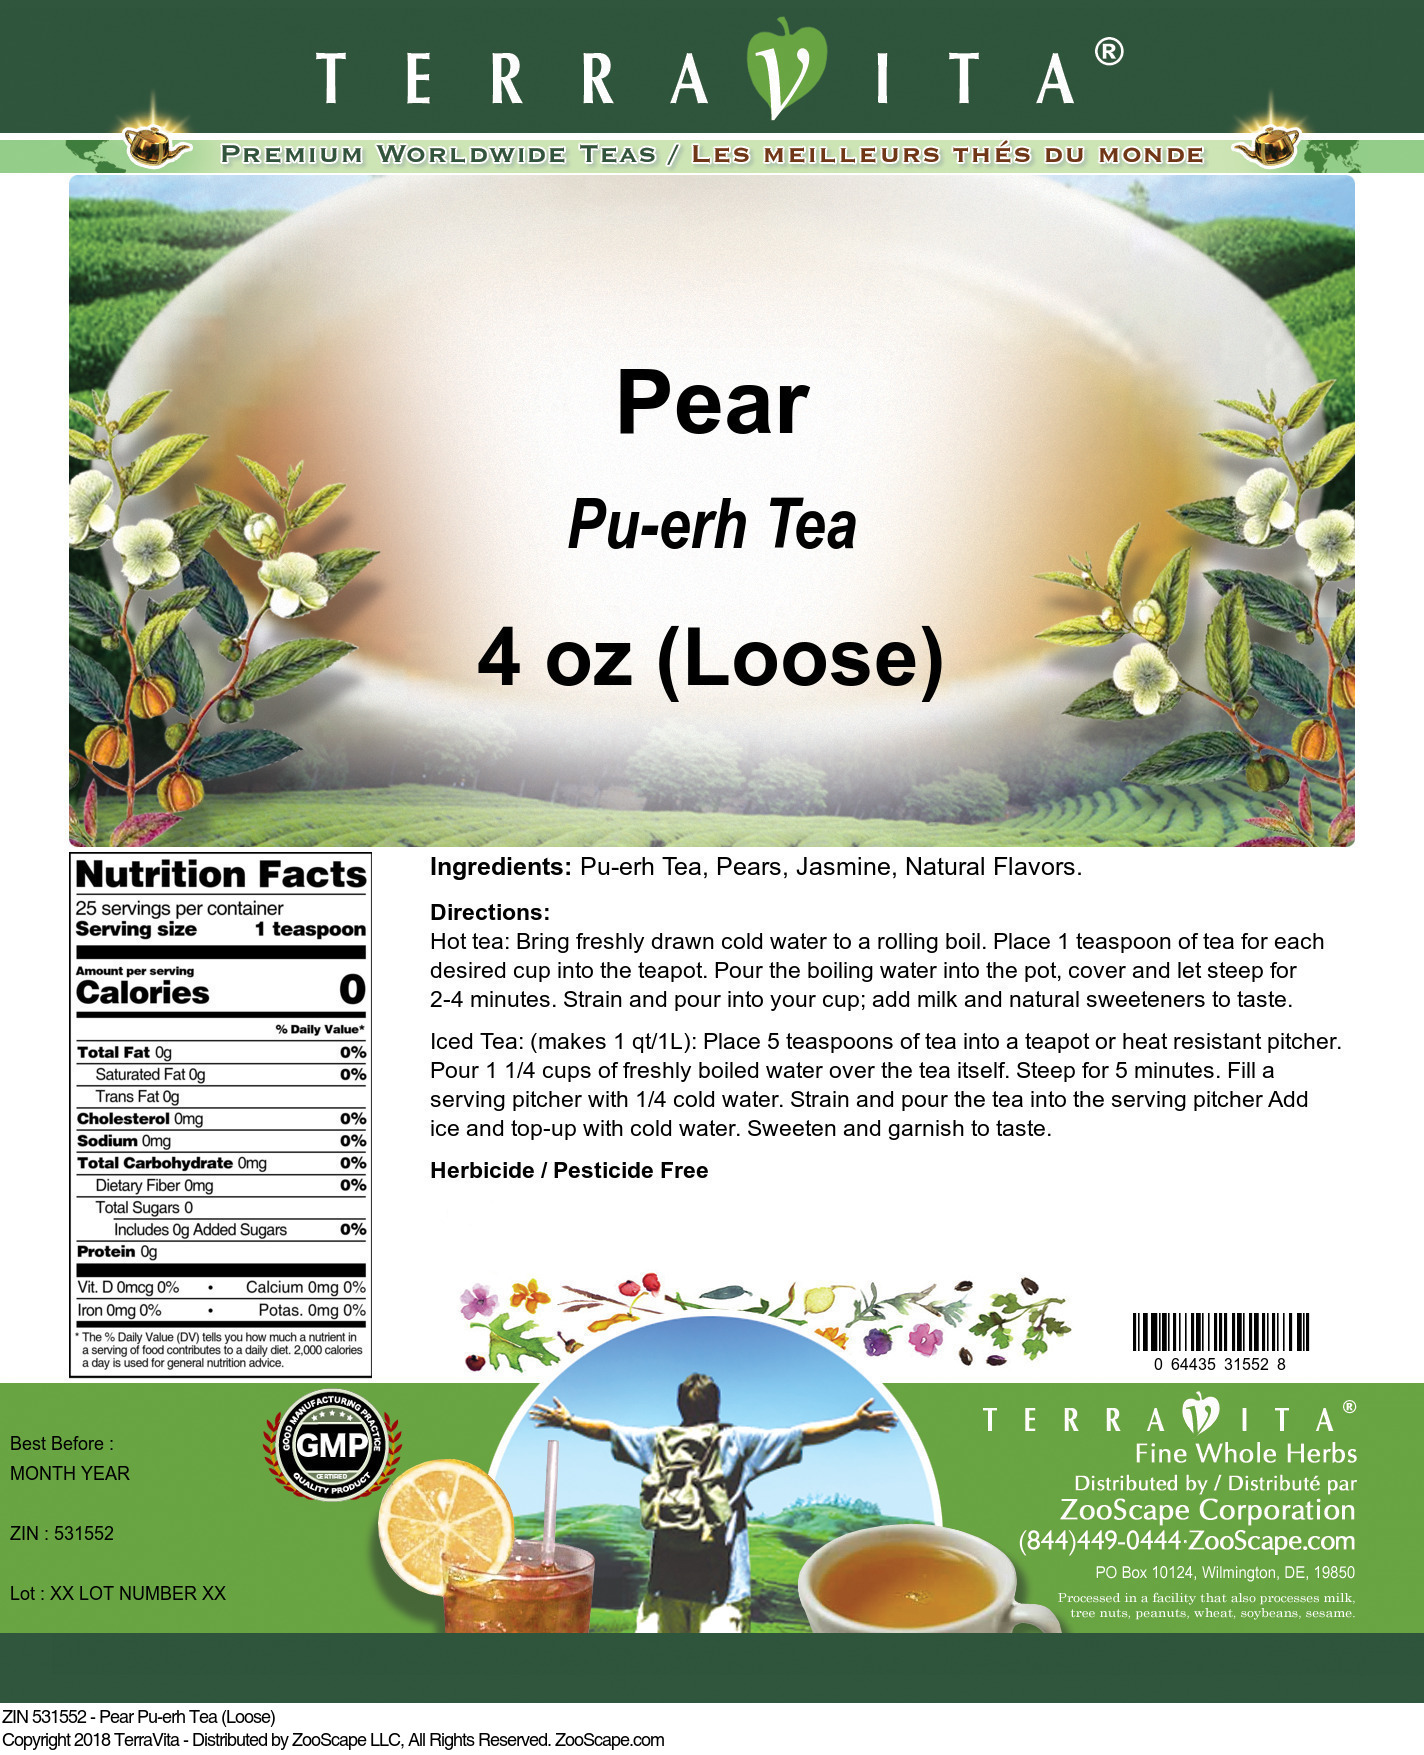 Pear Pu-erh Tea (Loose) - Label